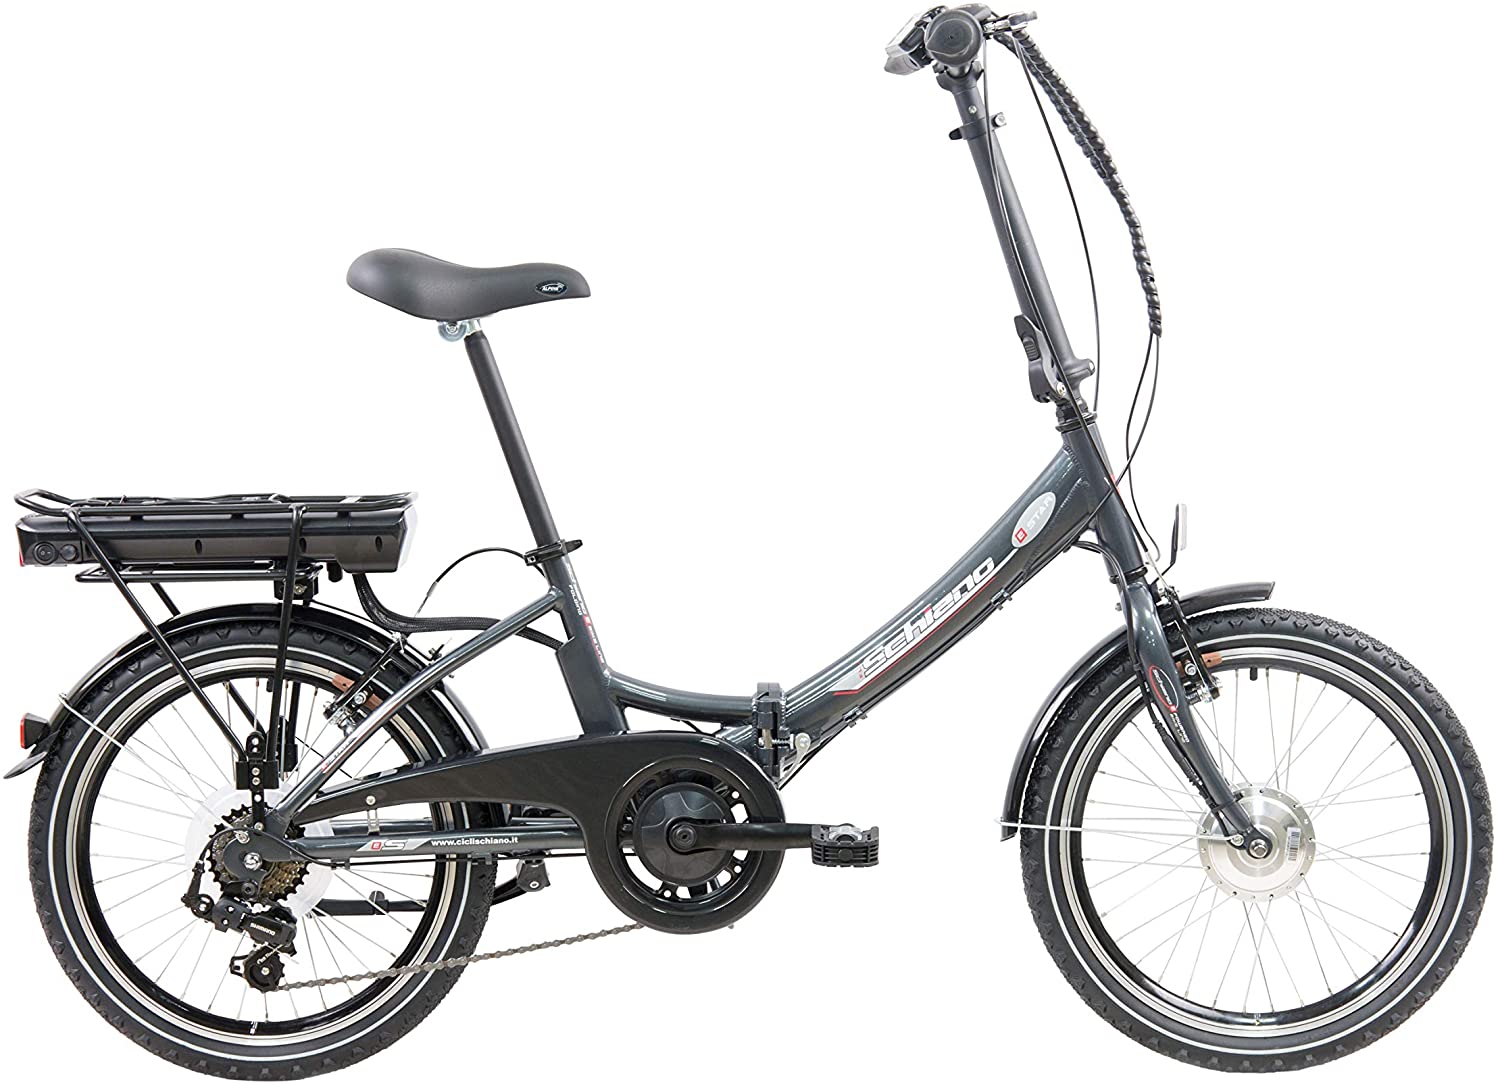 Las bicicletas más recomendables para regalar en Papá Noel 2020